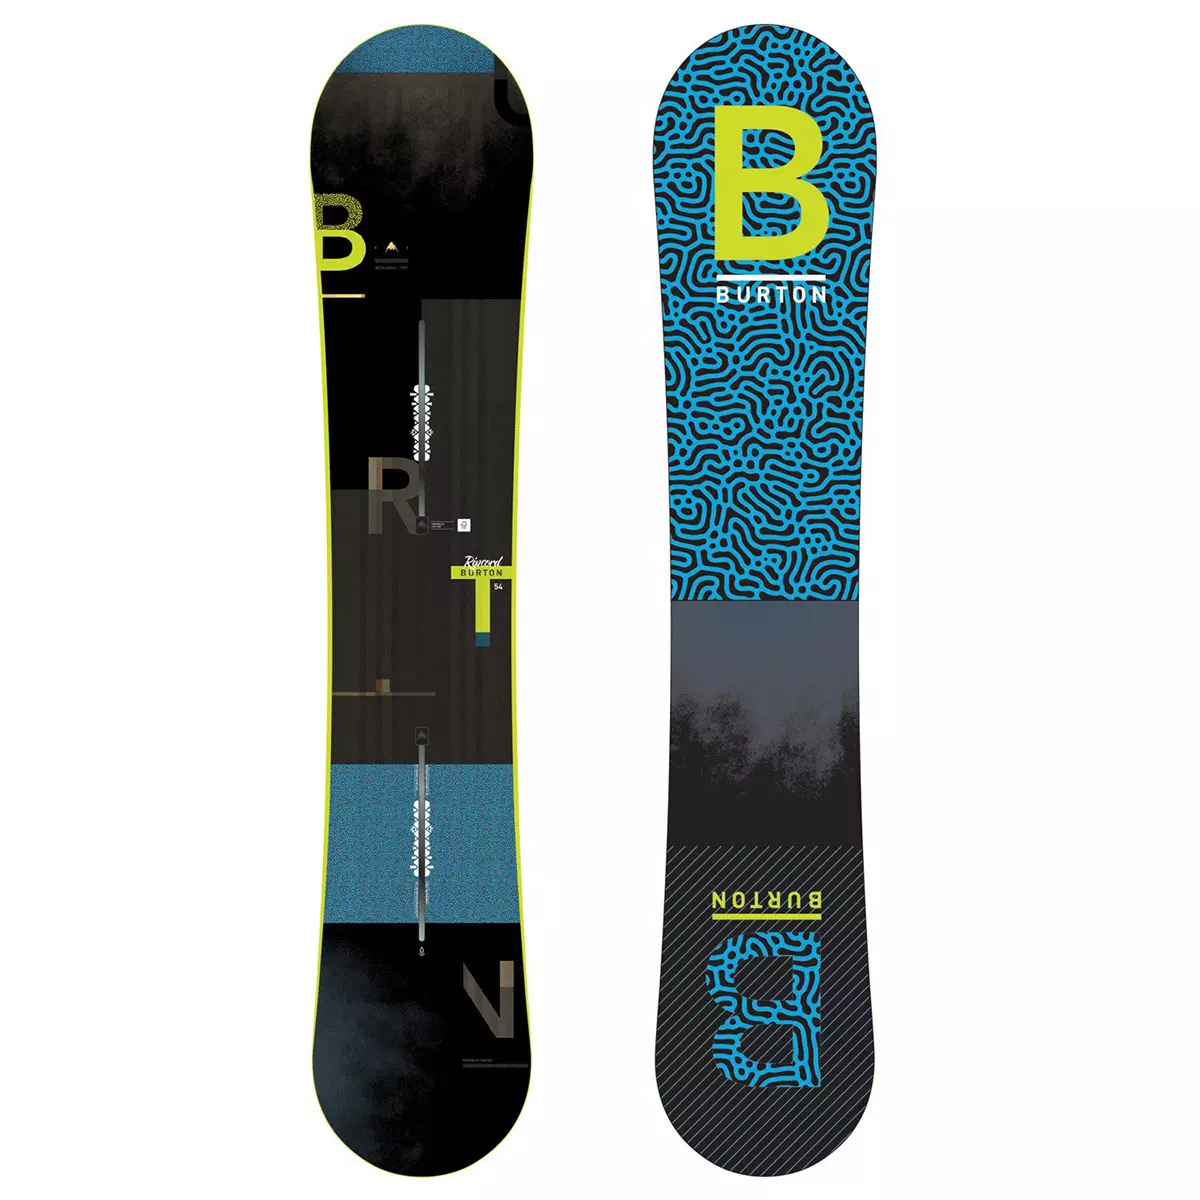 Burton Snowboards: Papan anak-anak, perempuan dan laki-laki. Pengikat untuk papan seluncur anak-anak dan orang dewasa, pro dan kontra dari model perusahaan 20233_15